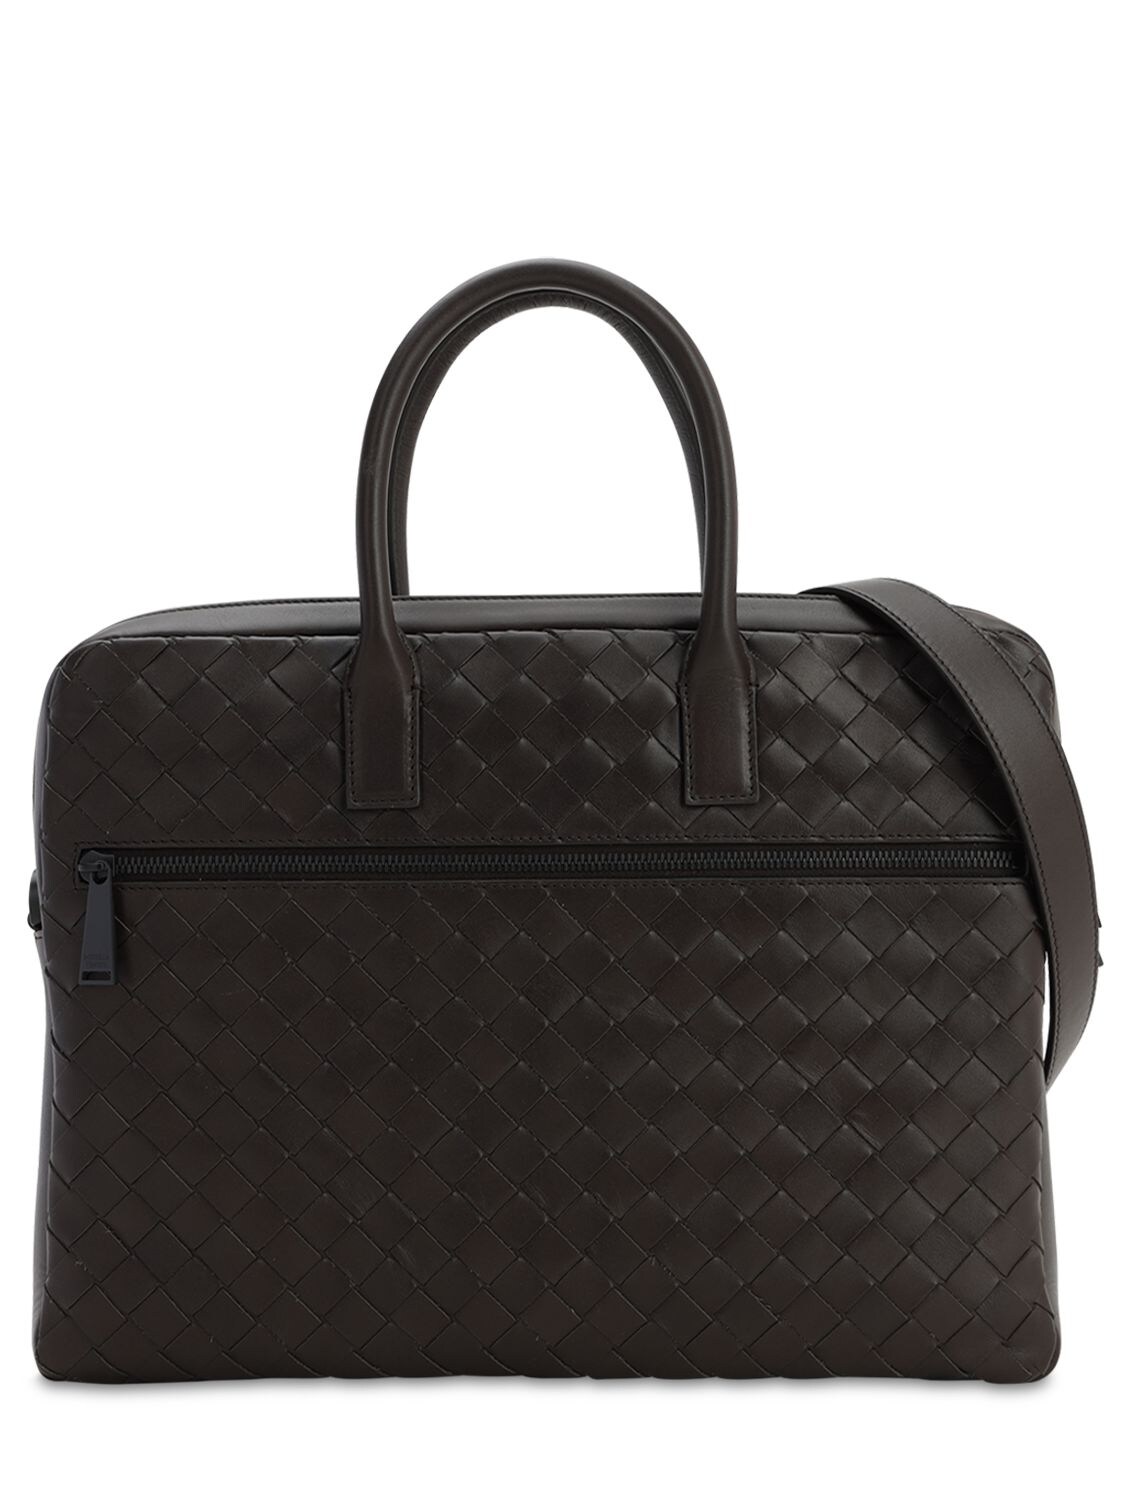 Bottega Veneta New Intrecciato Small Leather Briefcase In Fondente